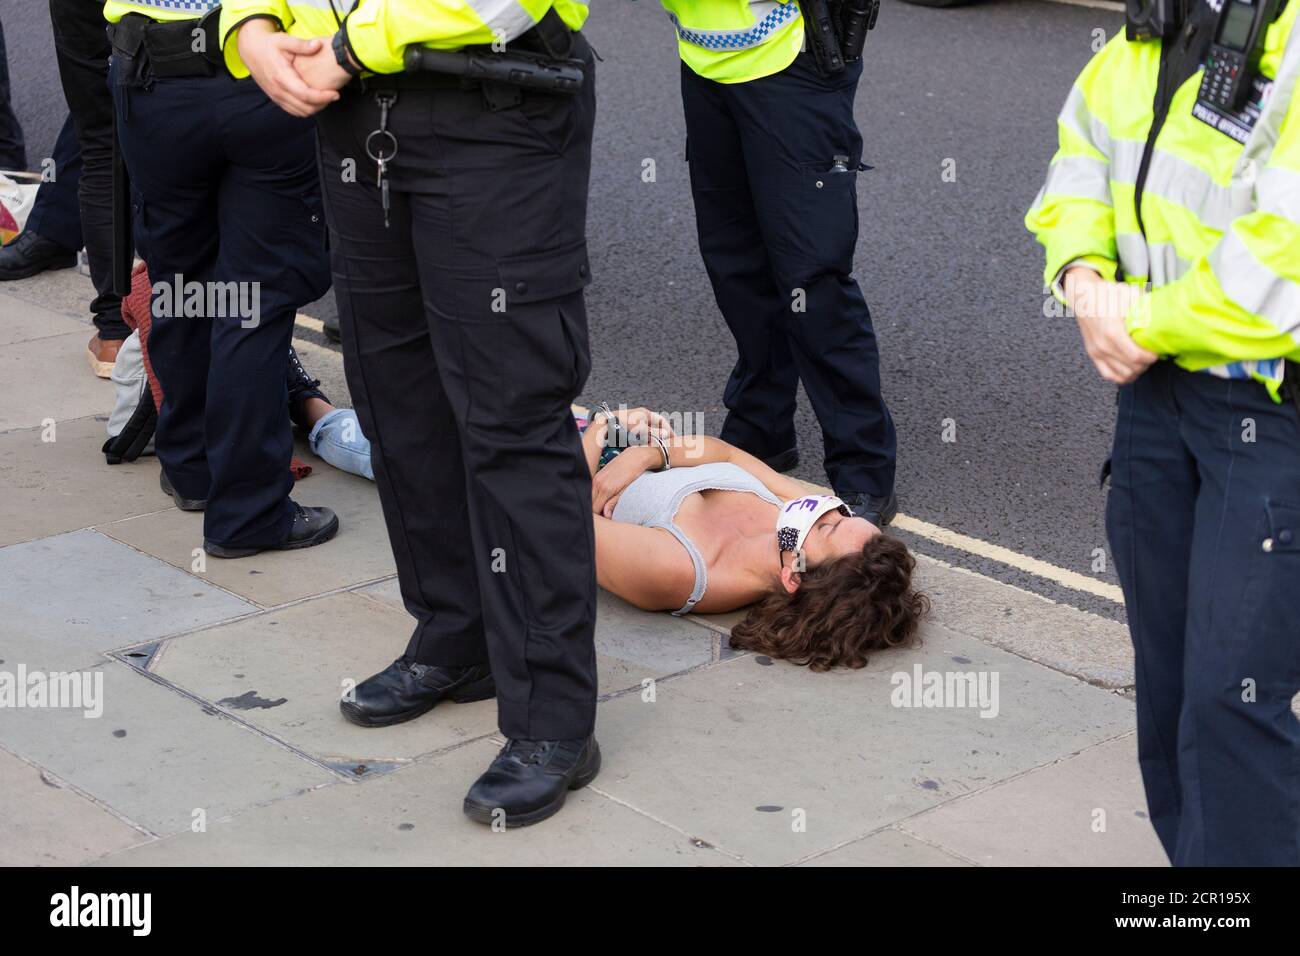 Arrestato il protestore ammanettato sul terreno fuori del Parlamento, Extinction Rebellion manifestazione, Londra, 10 settembre 2020 Foto Stock